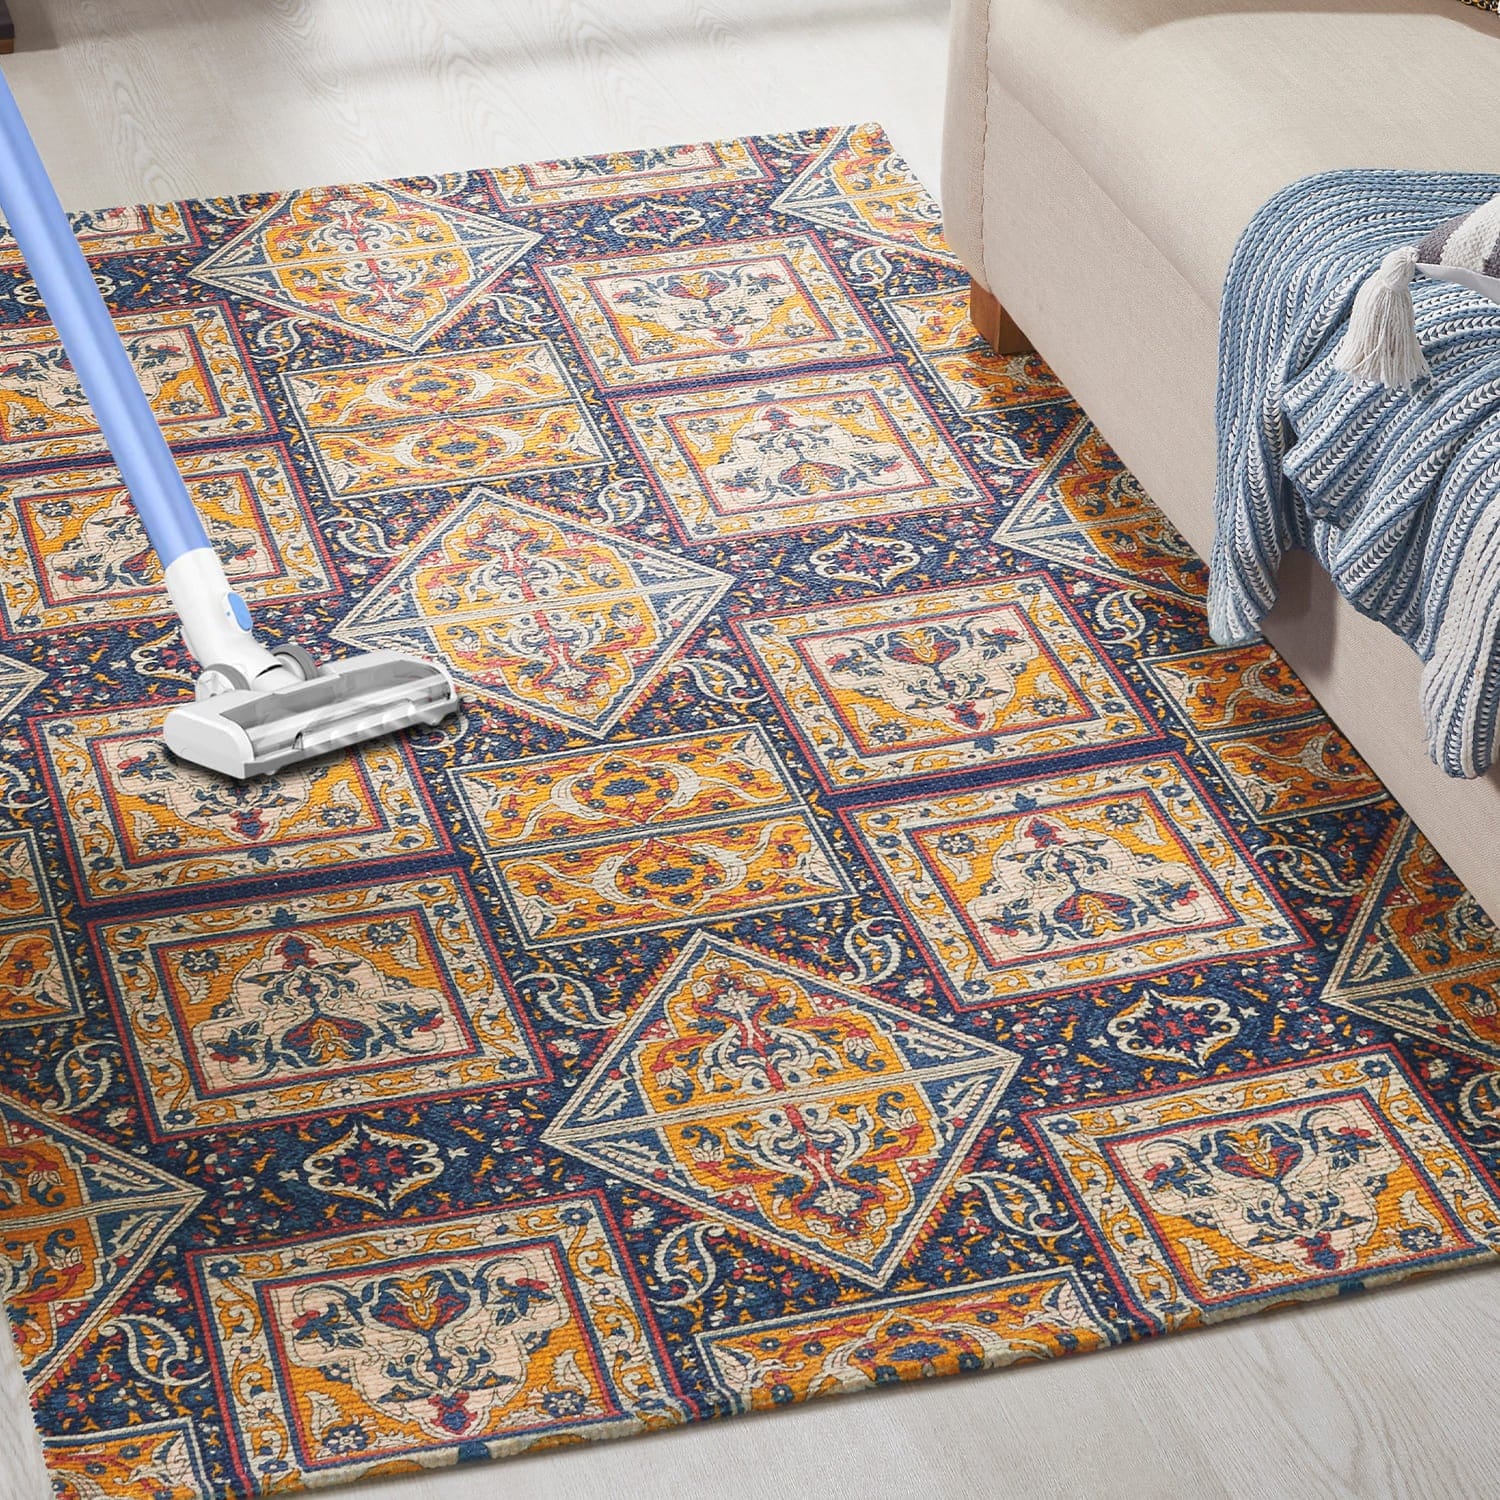 Mona-B Bag Mona B Printed Vintage Dhurrie Carpet Rug Runner Floor Mat for Living Room Bedroom: 3.5 X 5.5 Feet Multi Color- PR-101